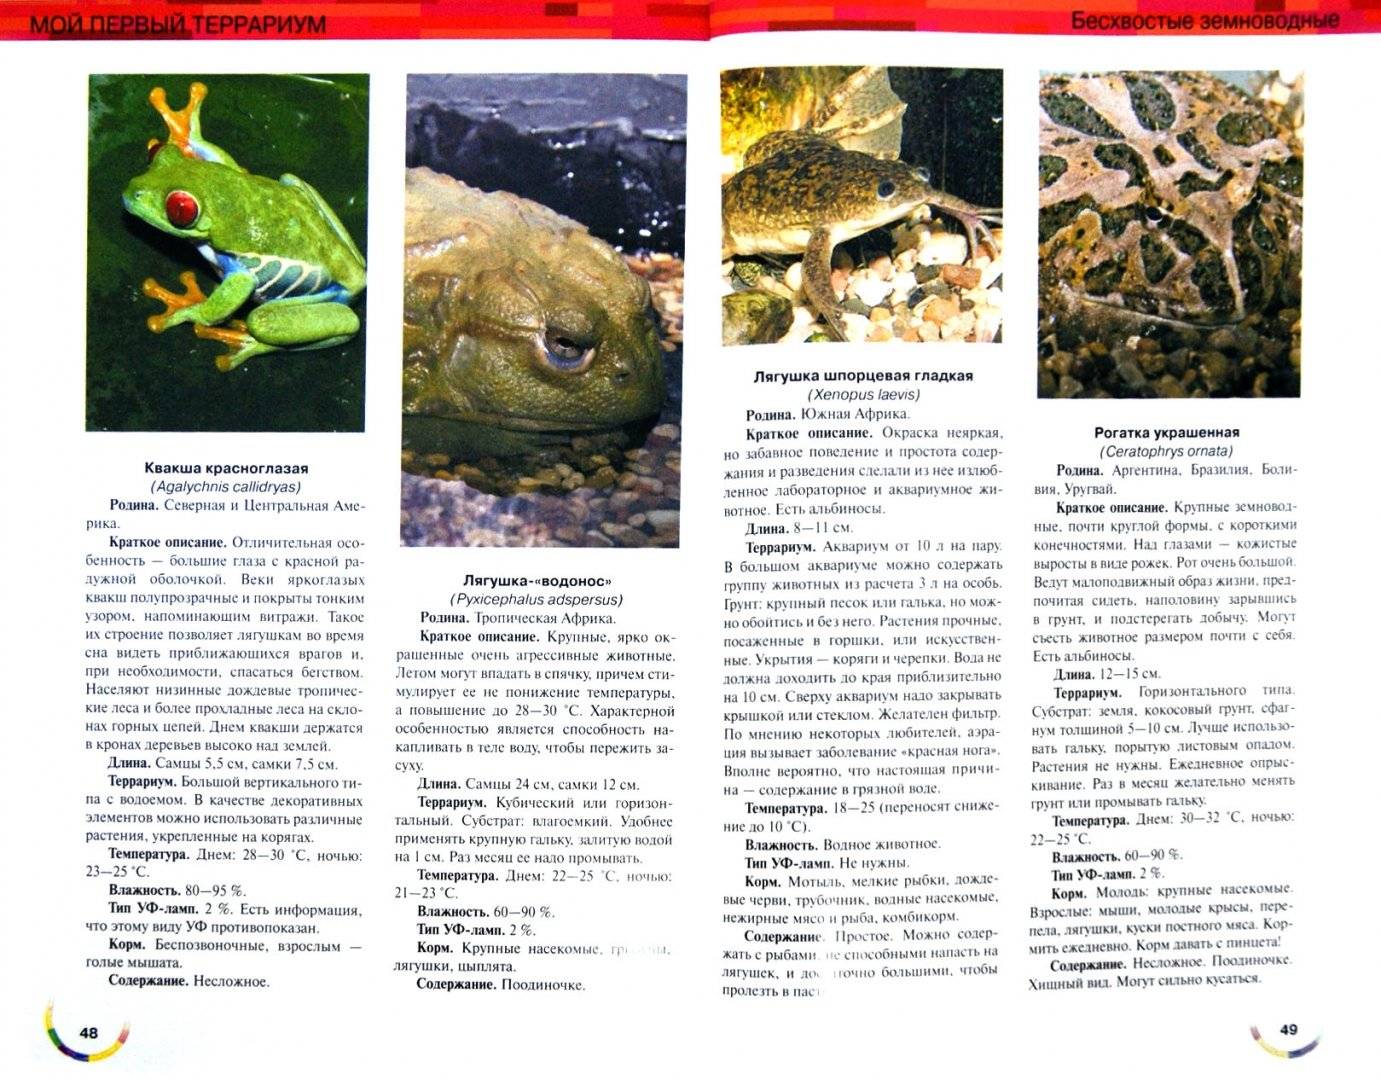 Земляная жаба: чем питается, где обитает, описание и основные виды